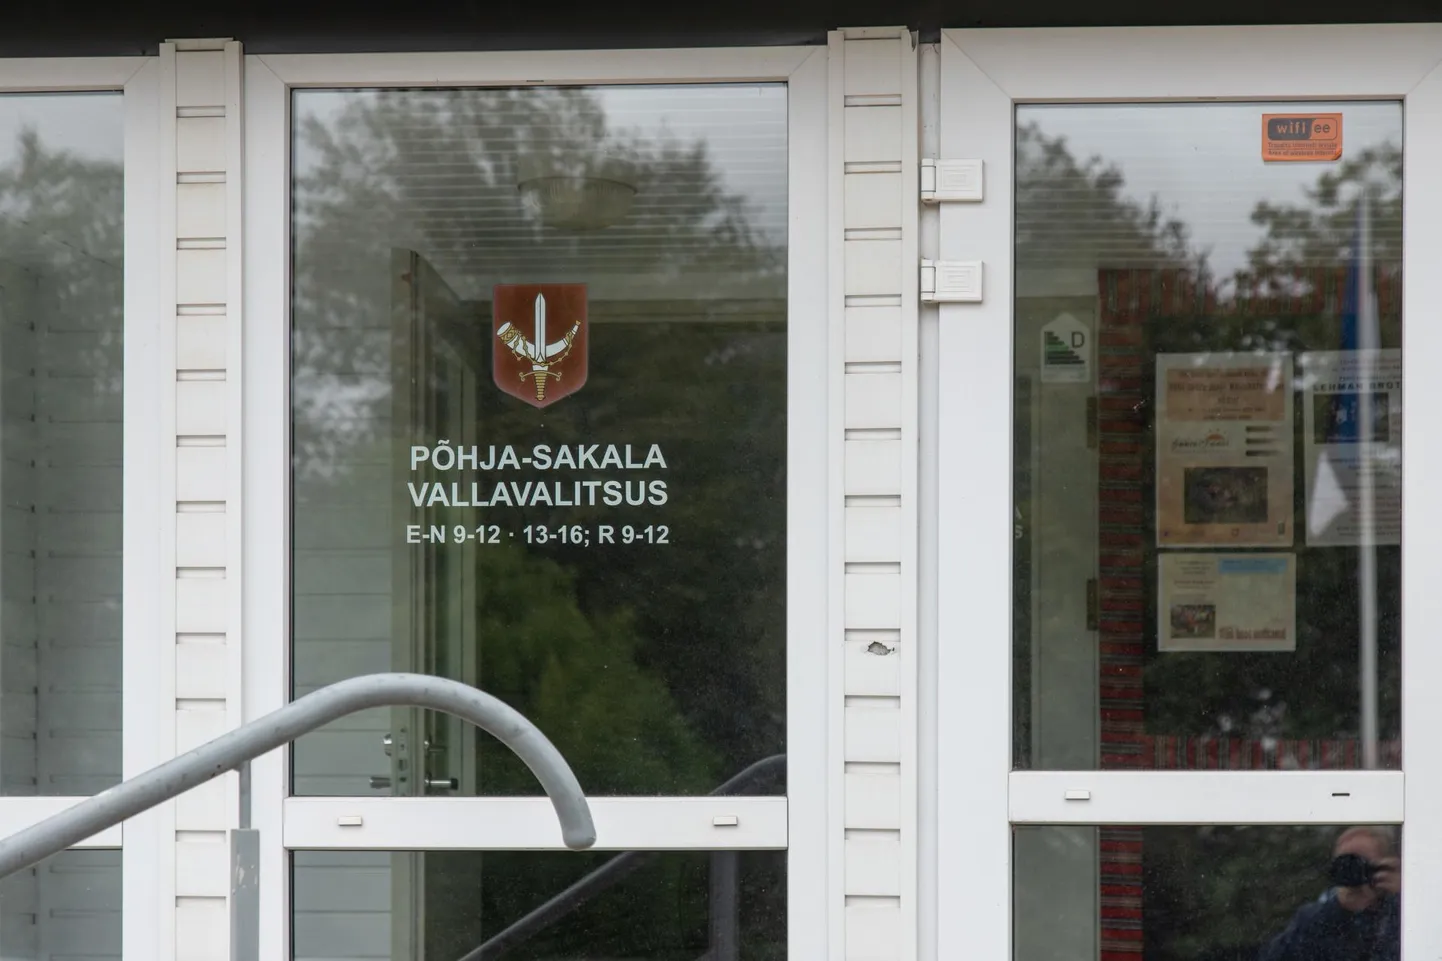 Põhja-Sakala valla kahe raamatupidaja võimaliku omastamise süüasi on jõudnud politseist prokuratuuri.